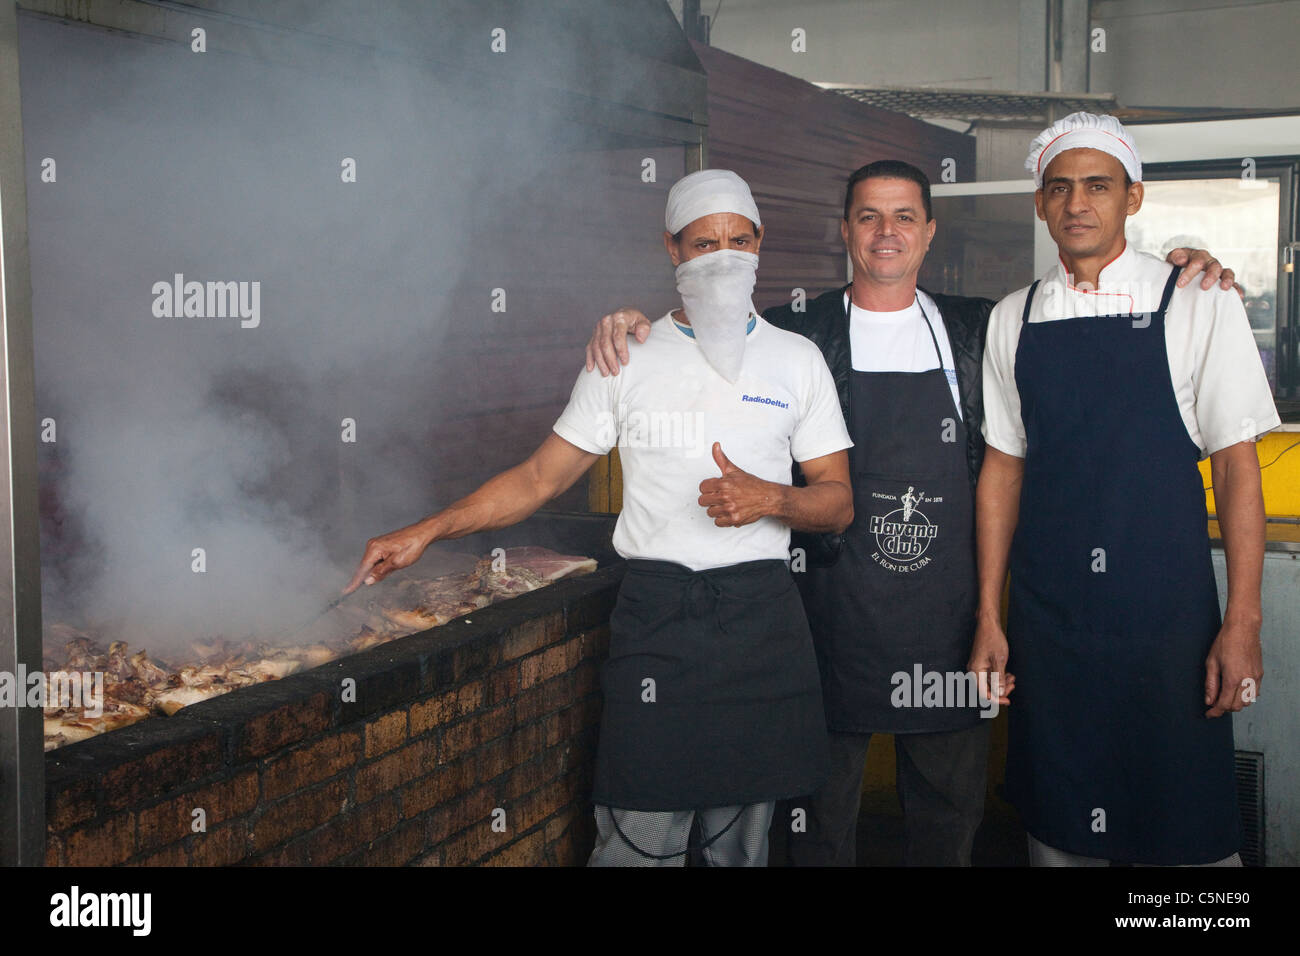 Kuba, Havanna. Koch und Kollegen Mittagessen vorbereiten, Grillen, Huhn und  Rind, im Cafe am Handwerksmarkt Stockfotografie - Alamy